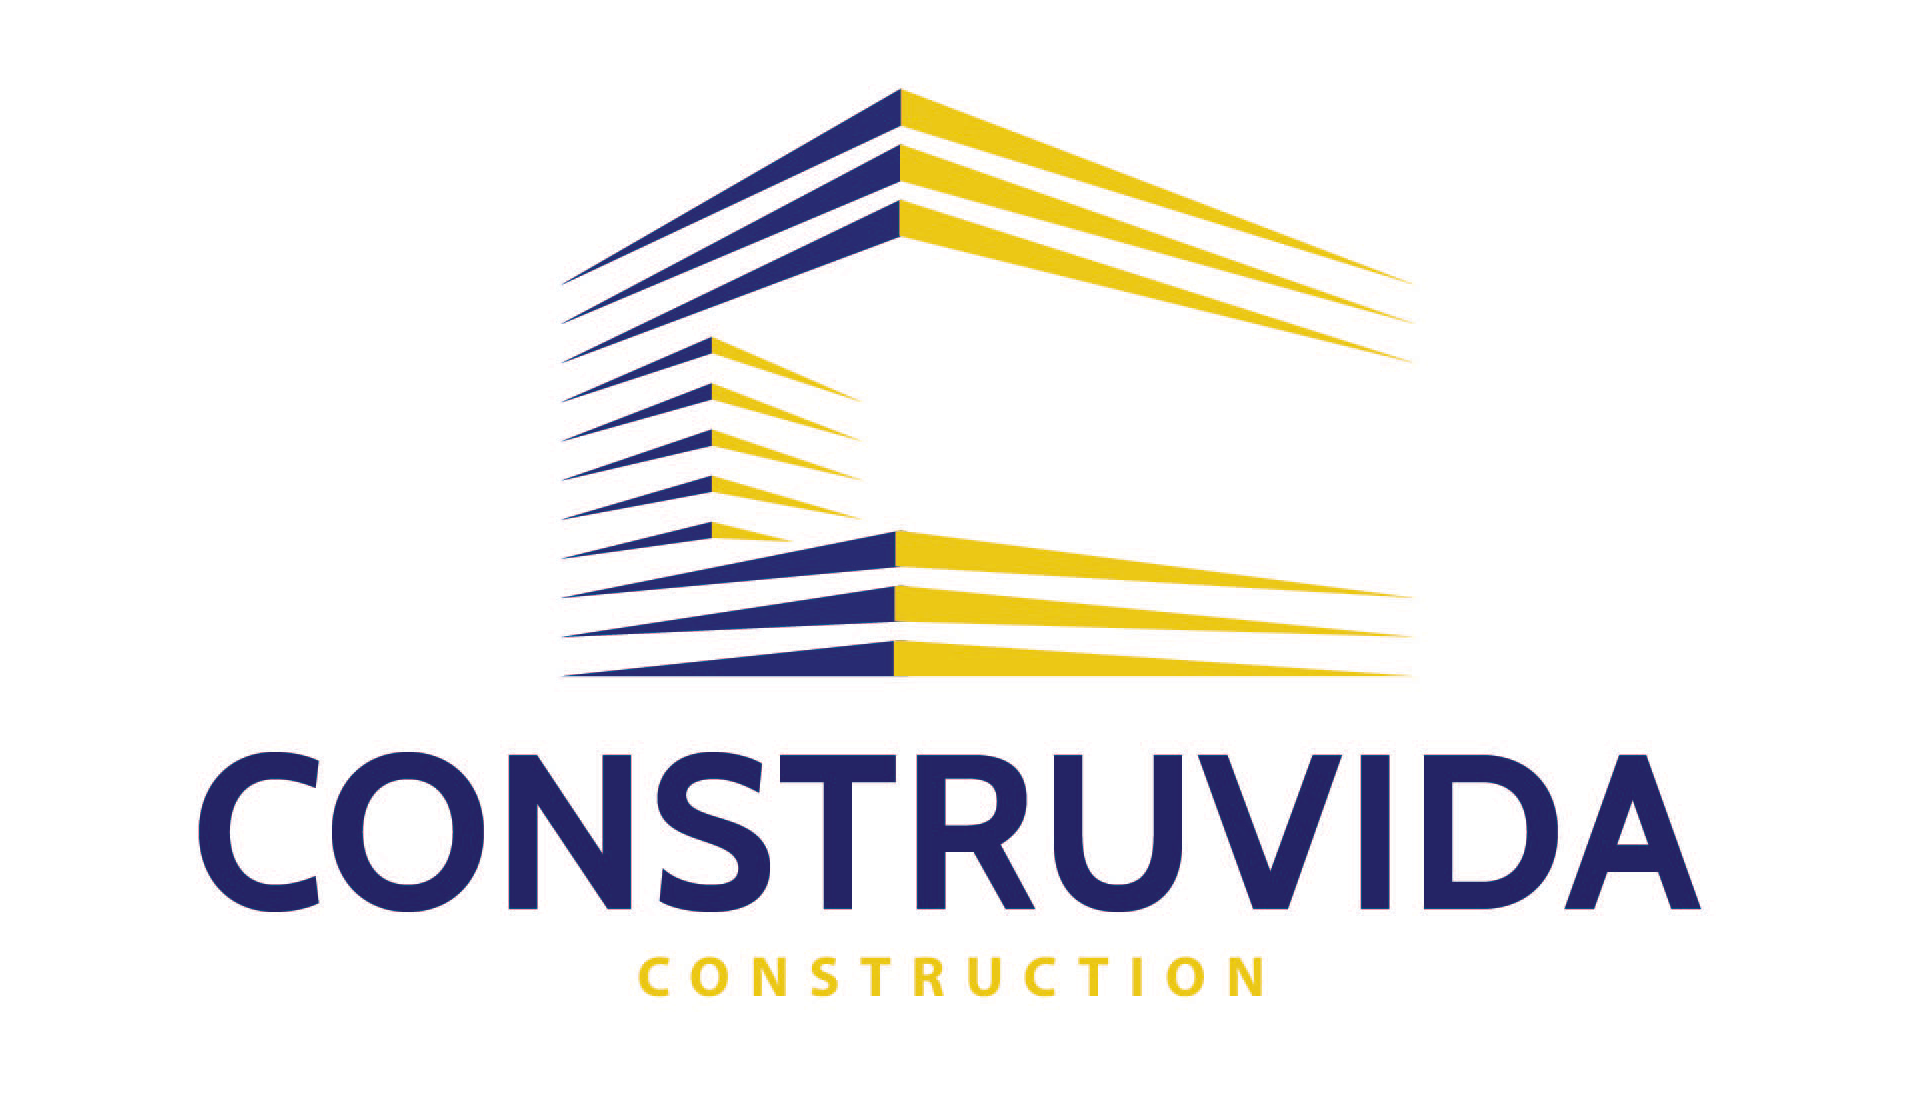 Construvdia_logo